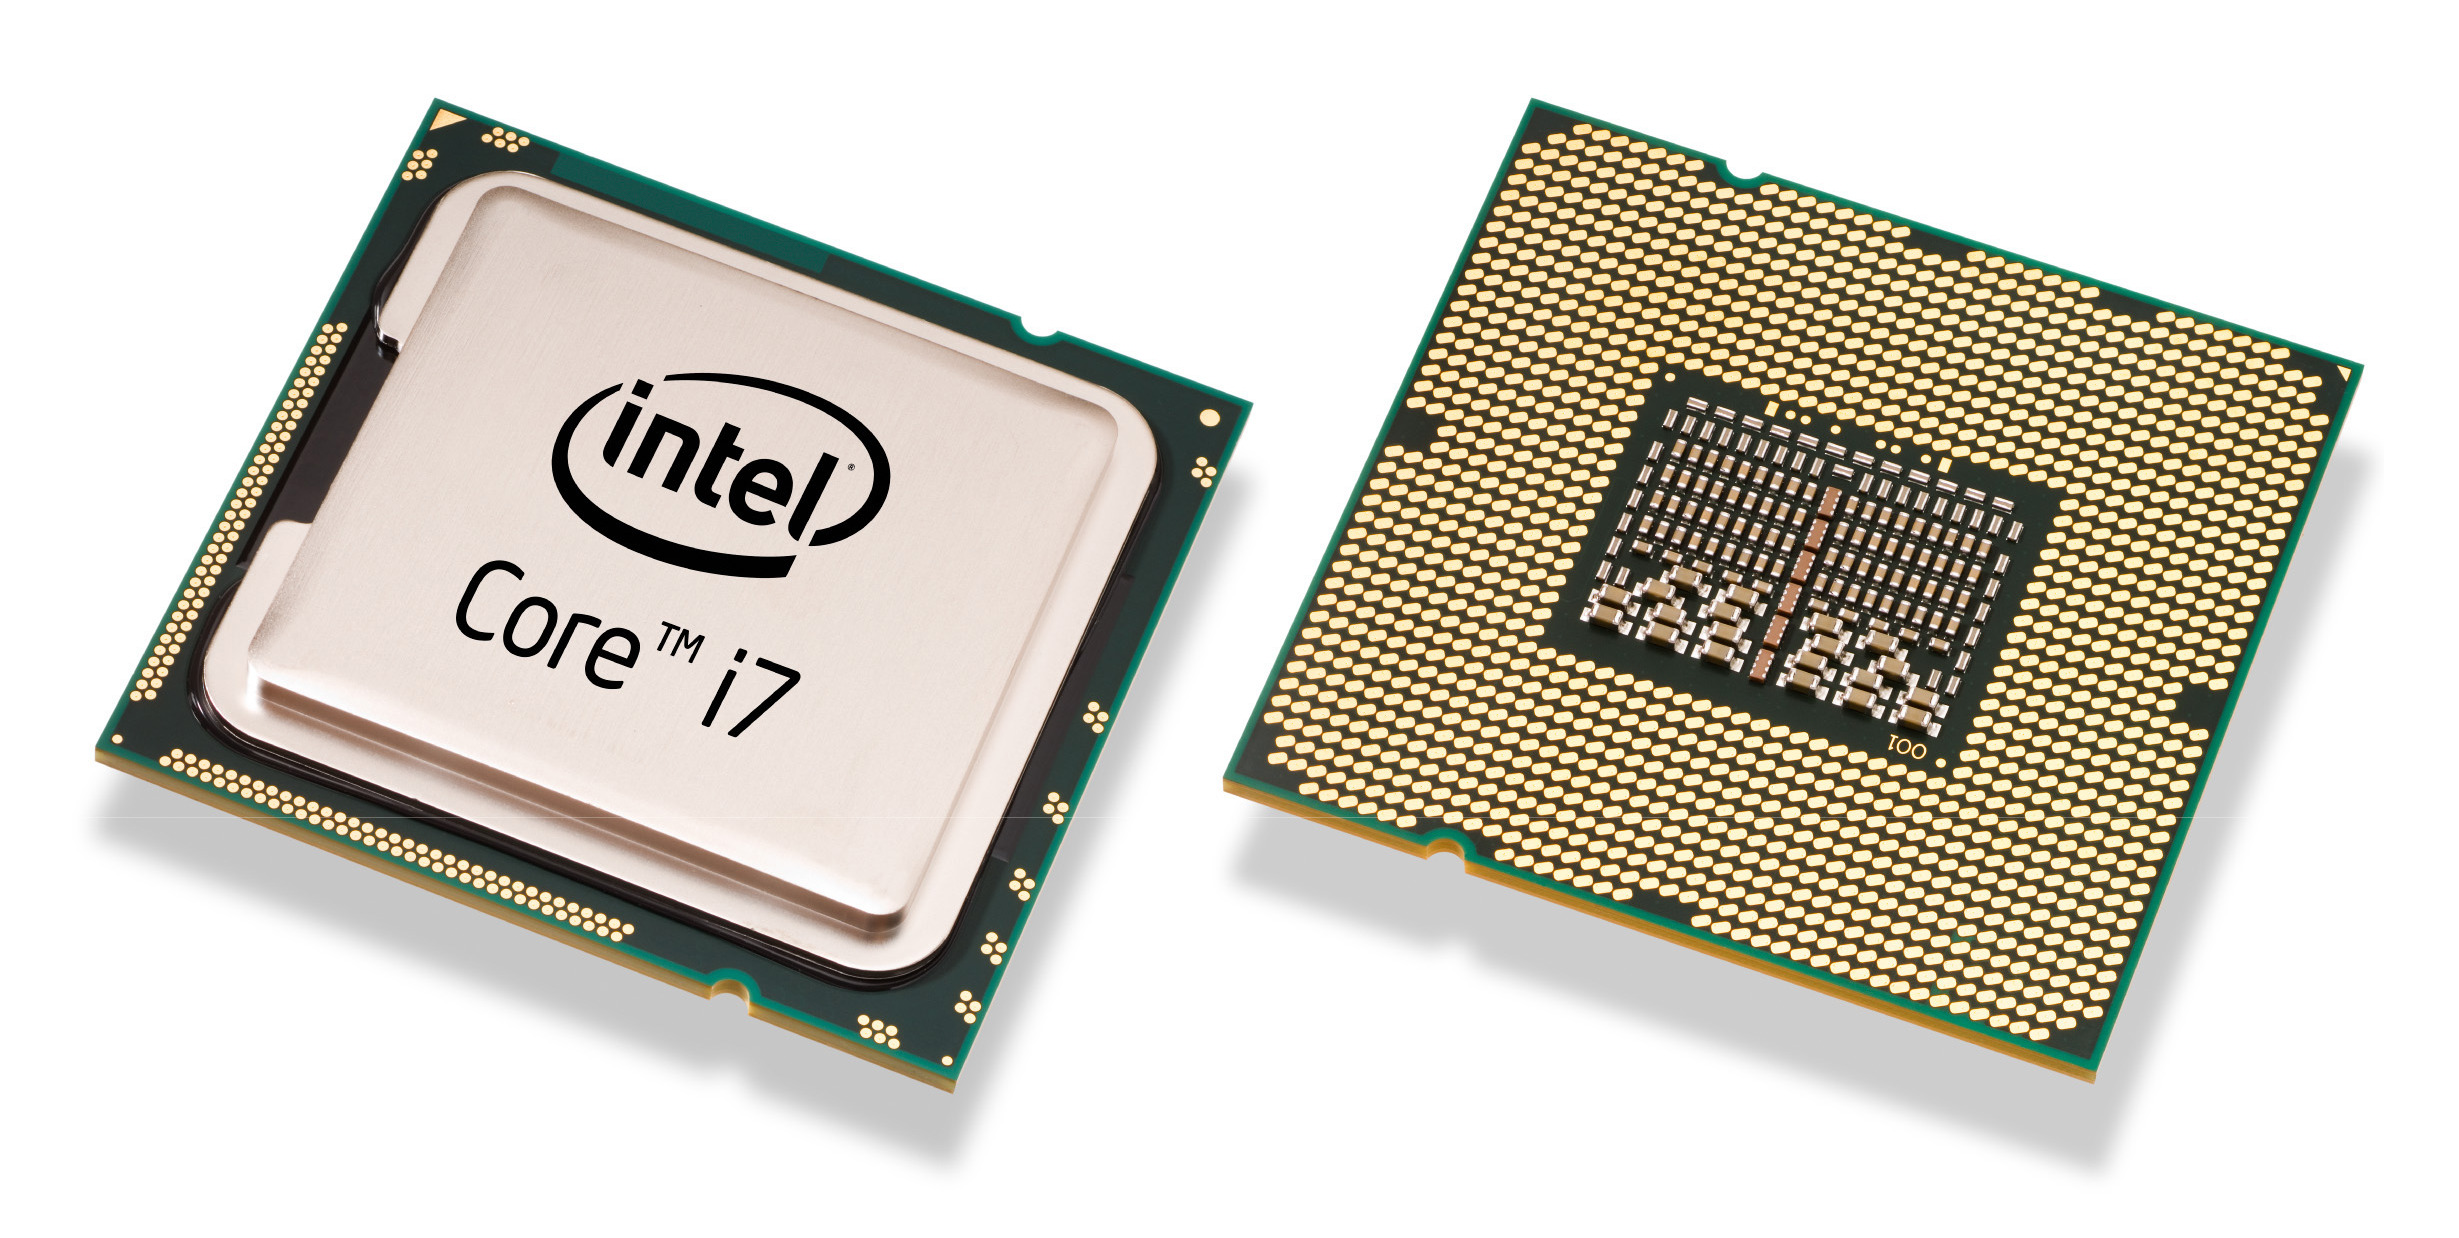 Procesor i7 firmy Intel